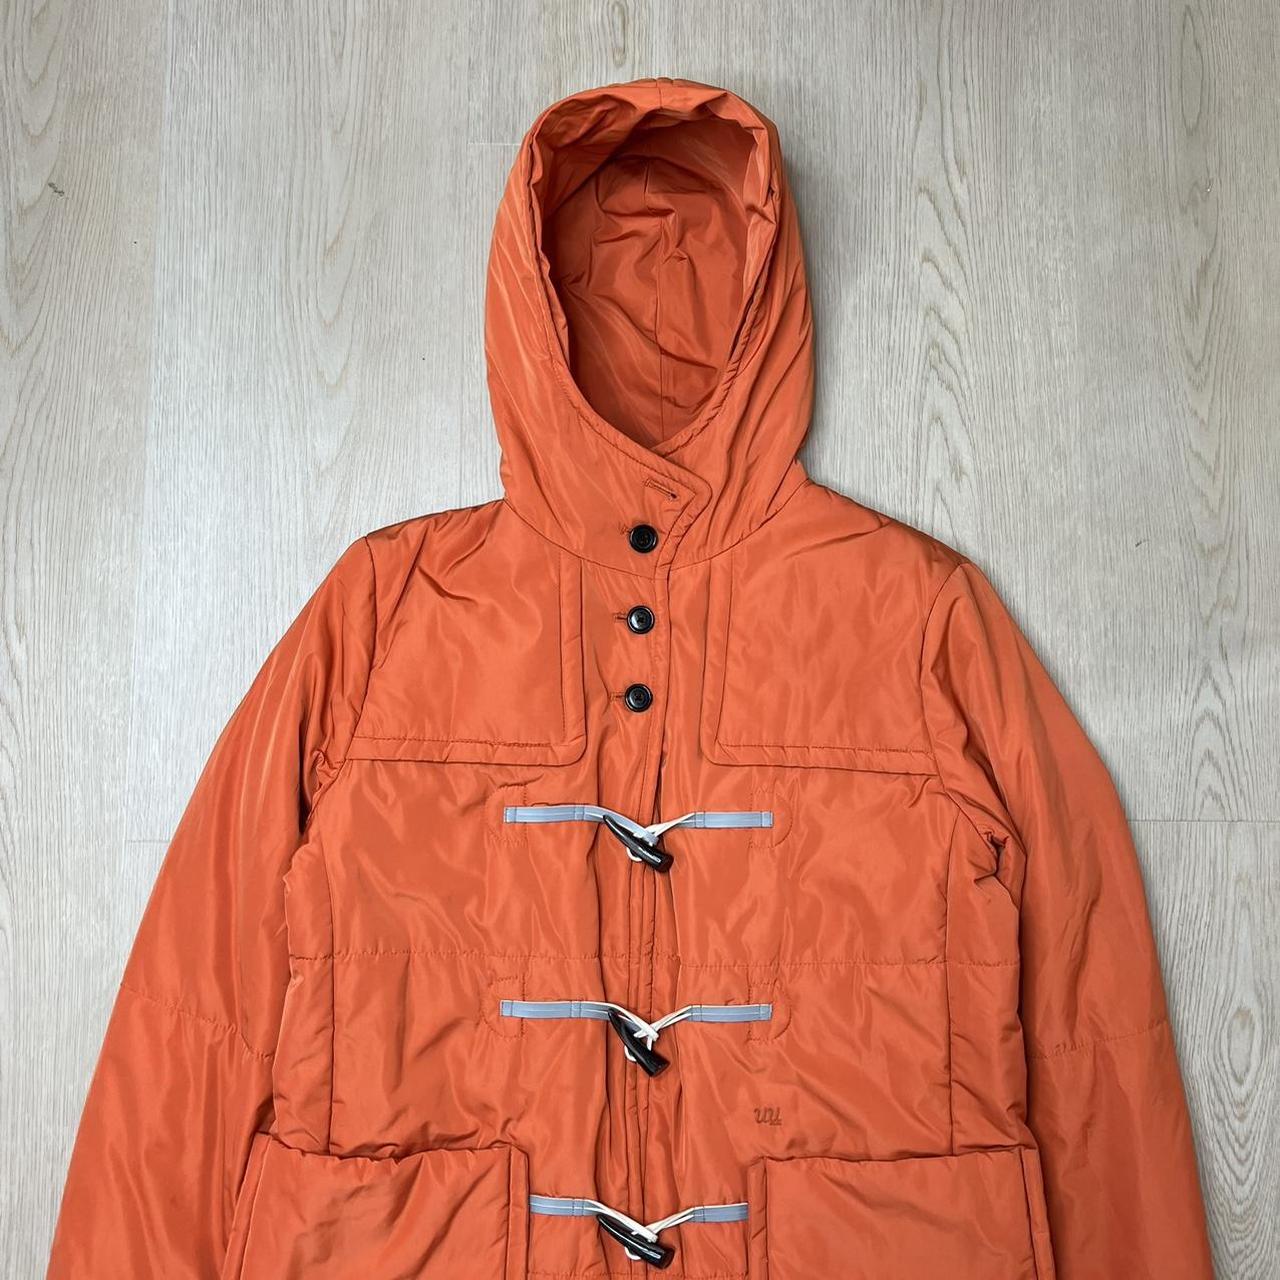 Undercover Women's Orange Coat | Depop